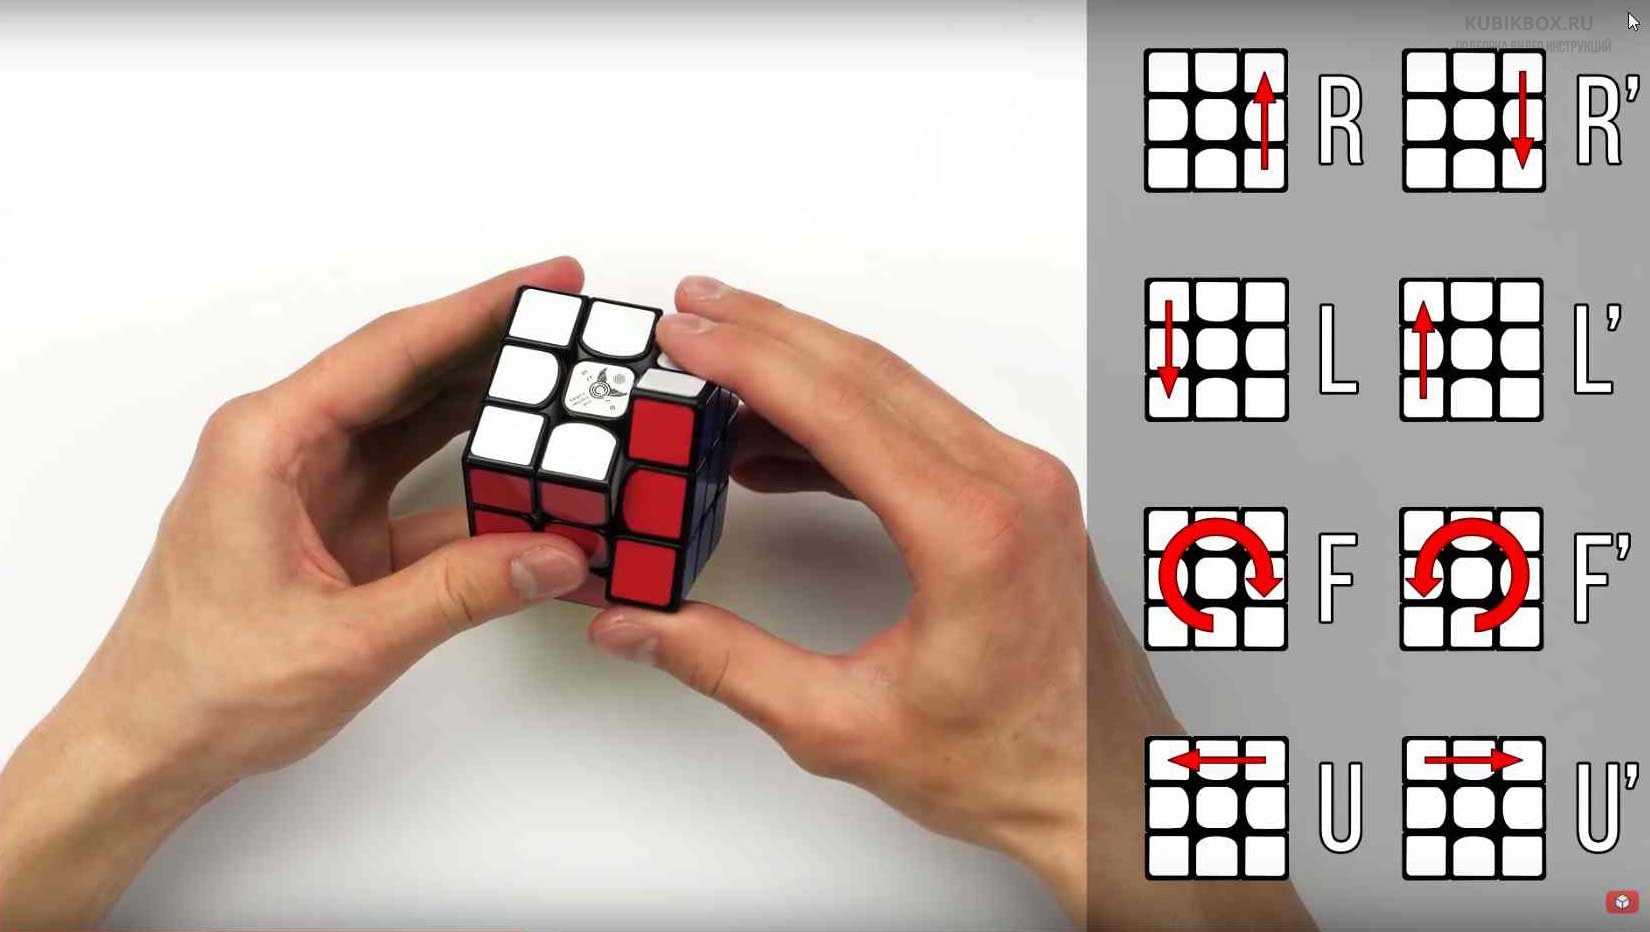 Приложение которое помогает собрать кубик рубик. Комбинации сборки кубика Рубика 3х3. Формула кубик рубик 3x3. Комбинации на кубик рубик 3 на 3. Алгоритм кубик рубик 3x3.